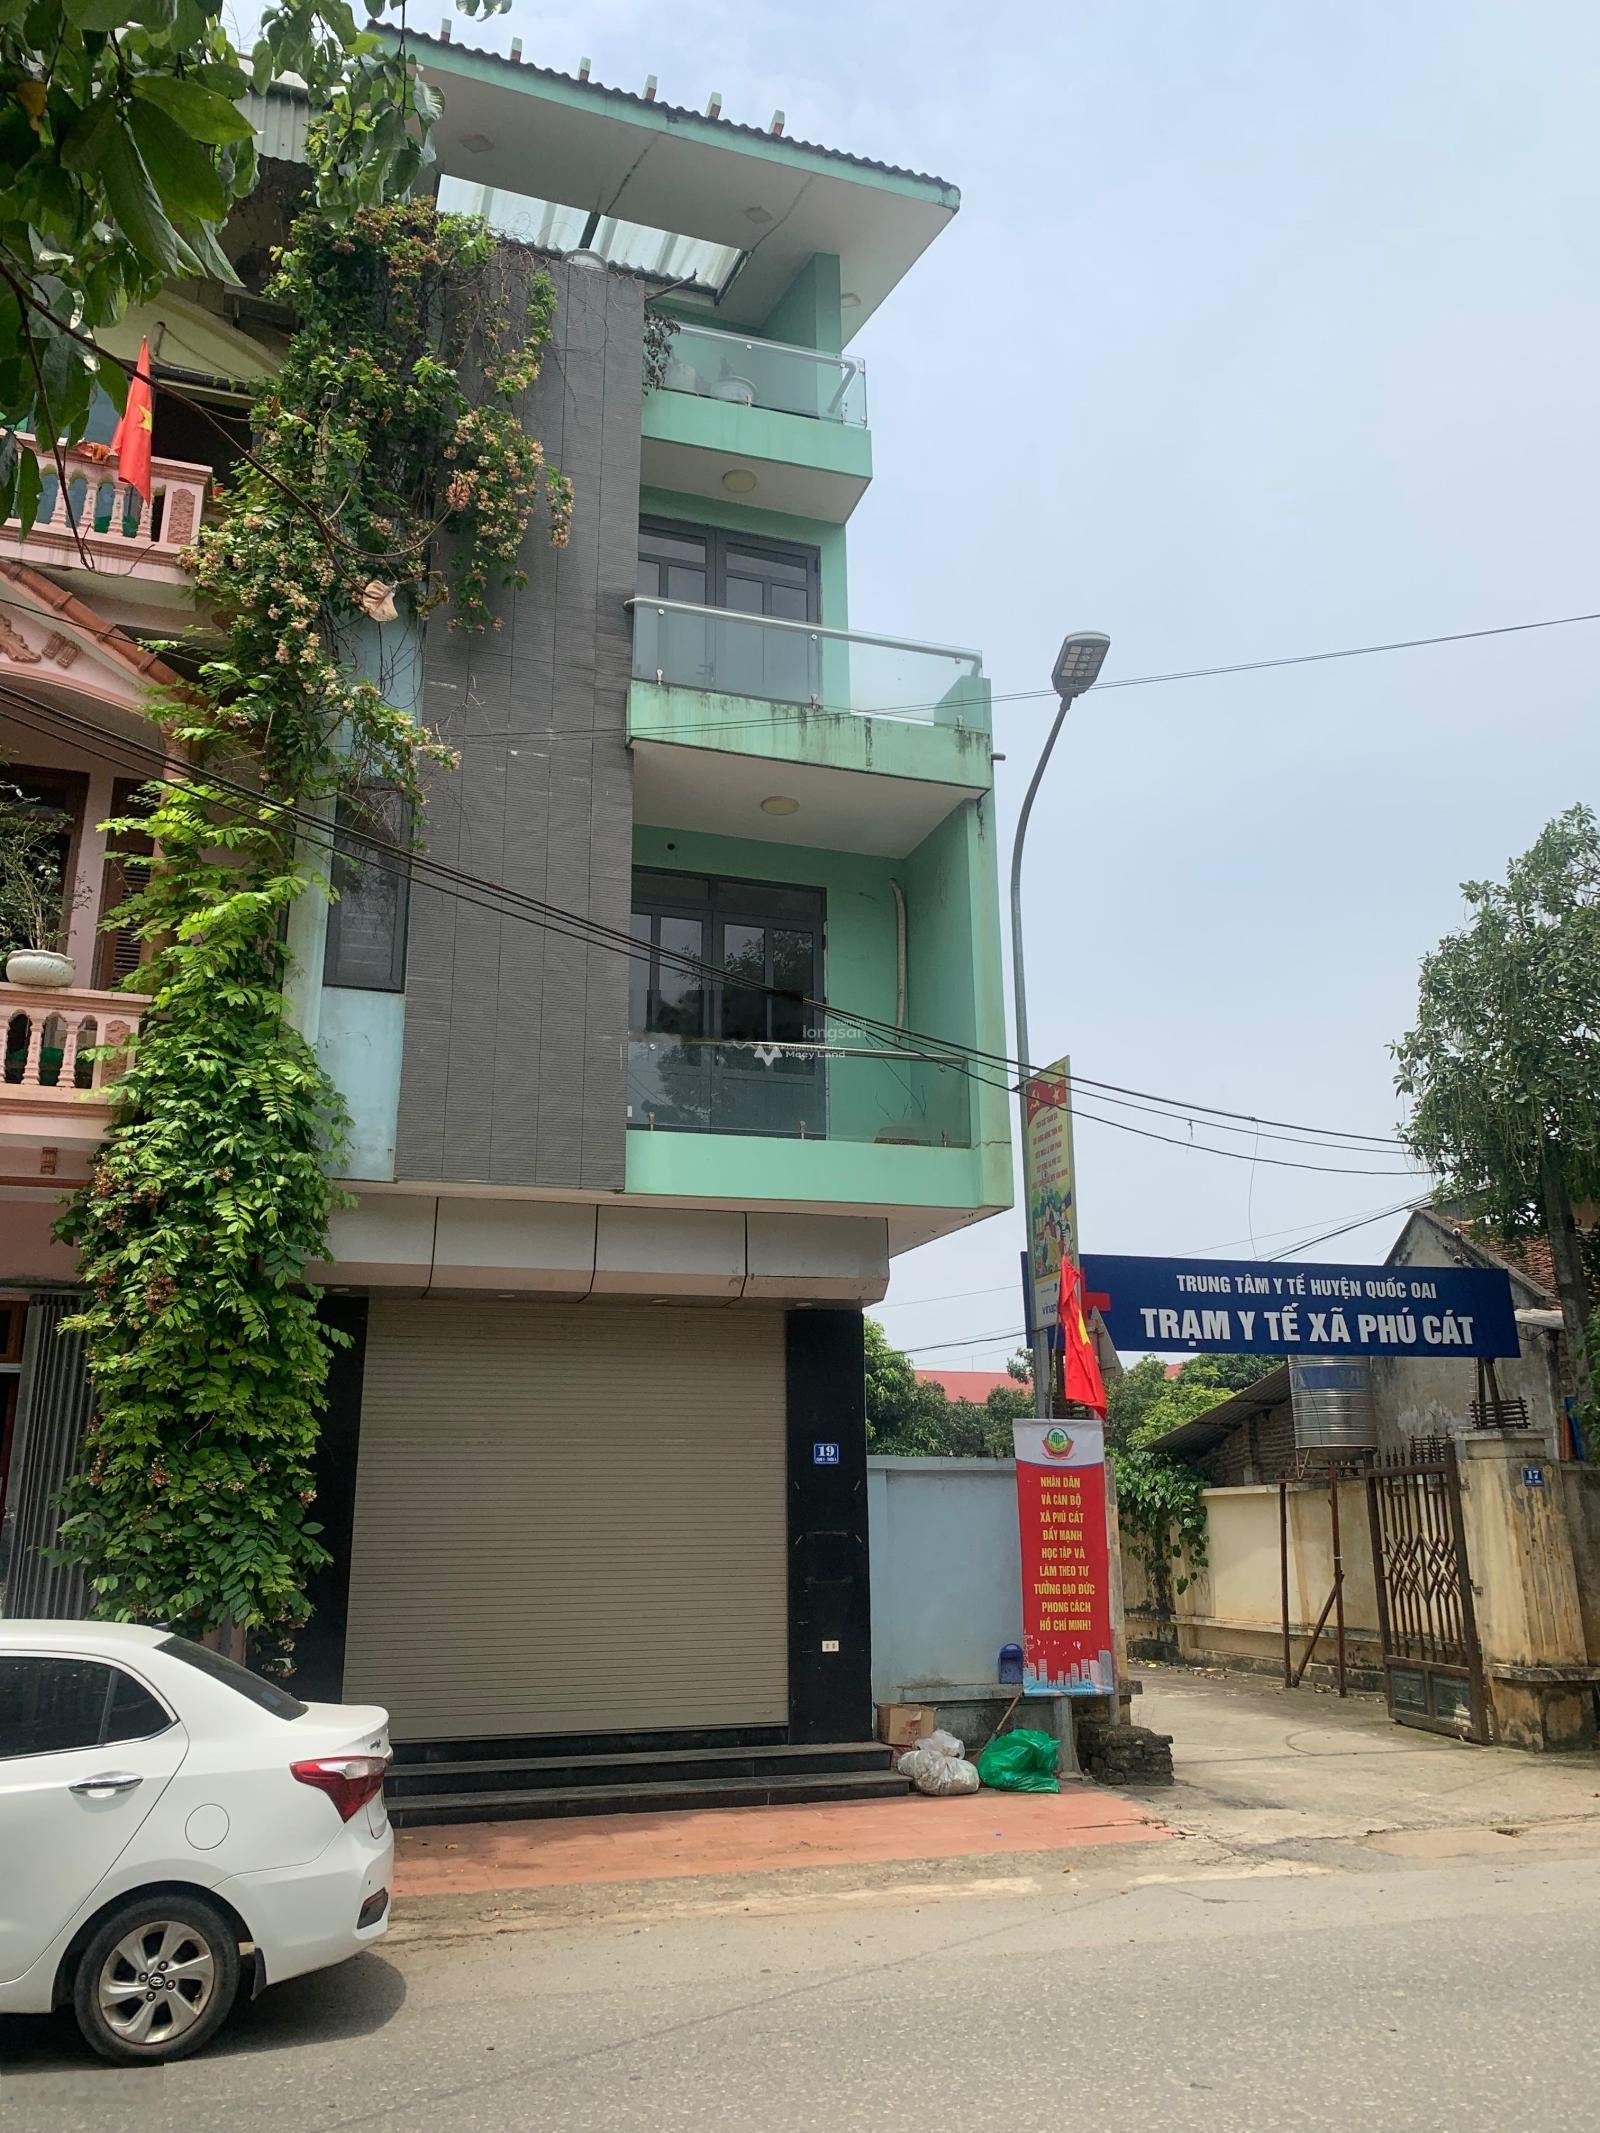 Cần bán nhà 3 tầng tại Đường 21A, Phú Cát, Quốc Oai. Diện tích 64m2, giá thương lượng-02